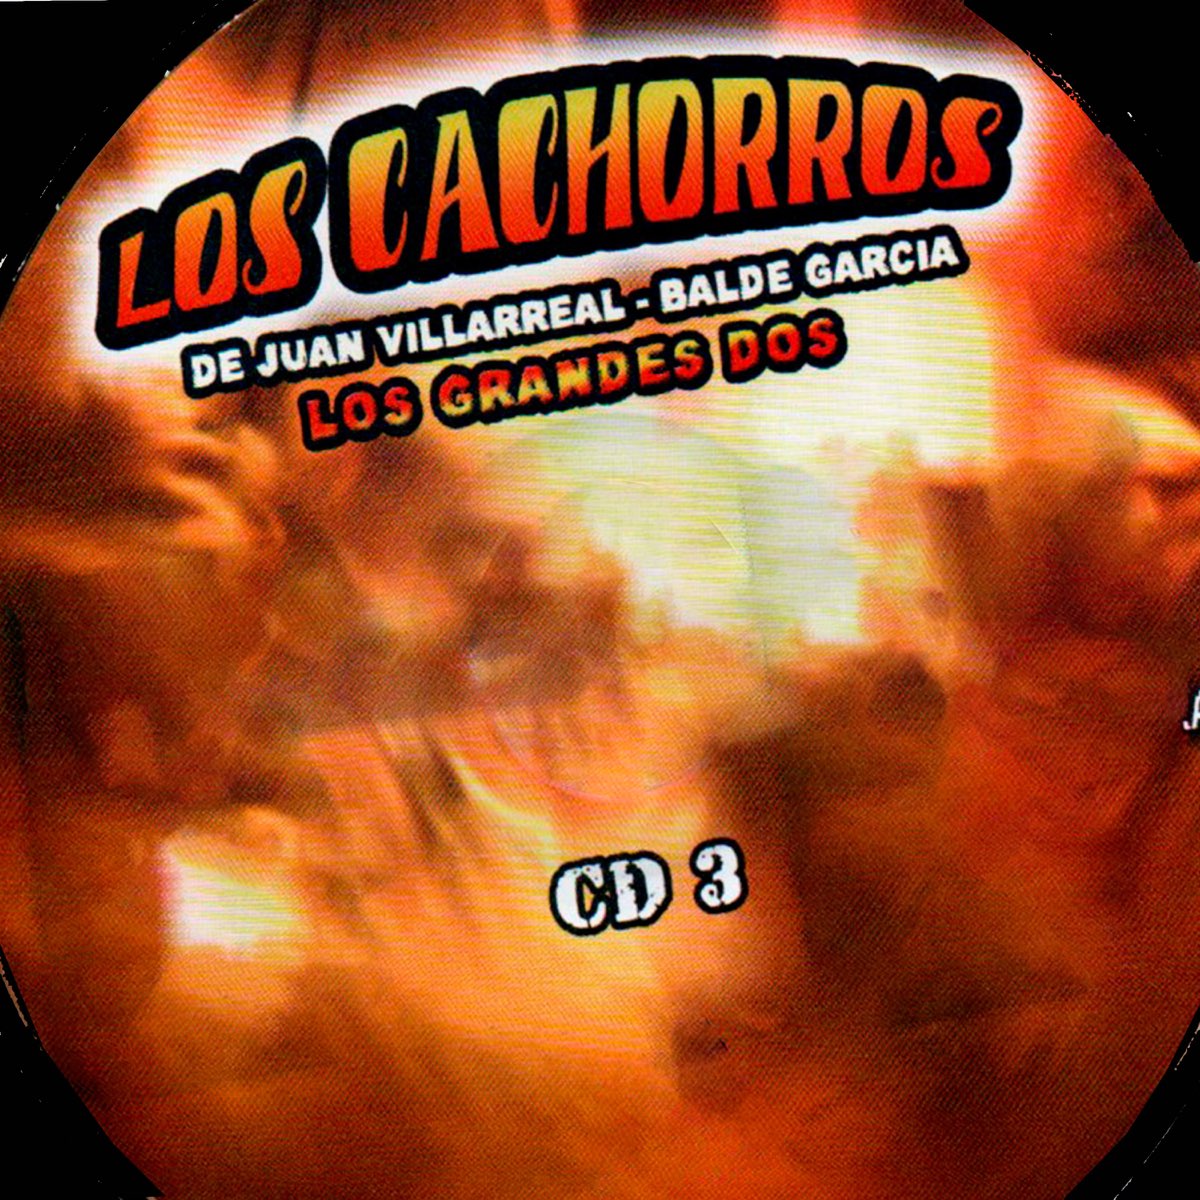 Los Cachorros de Juan Villarreal Y Balde Garcia - 51 Exitos (CD)